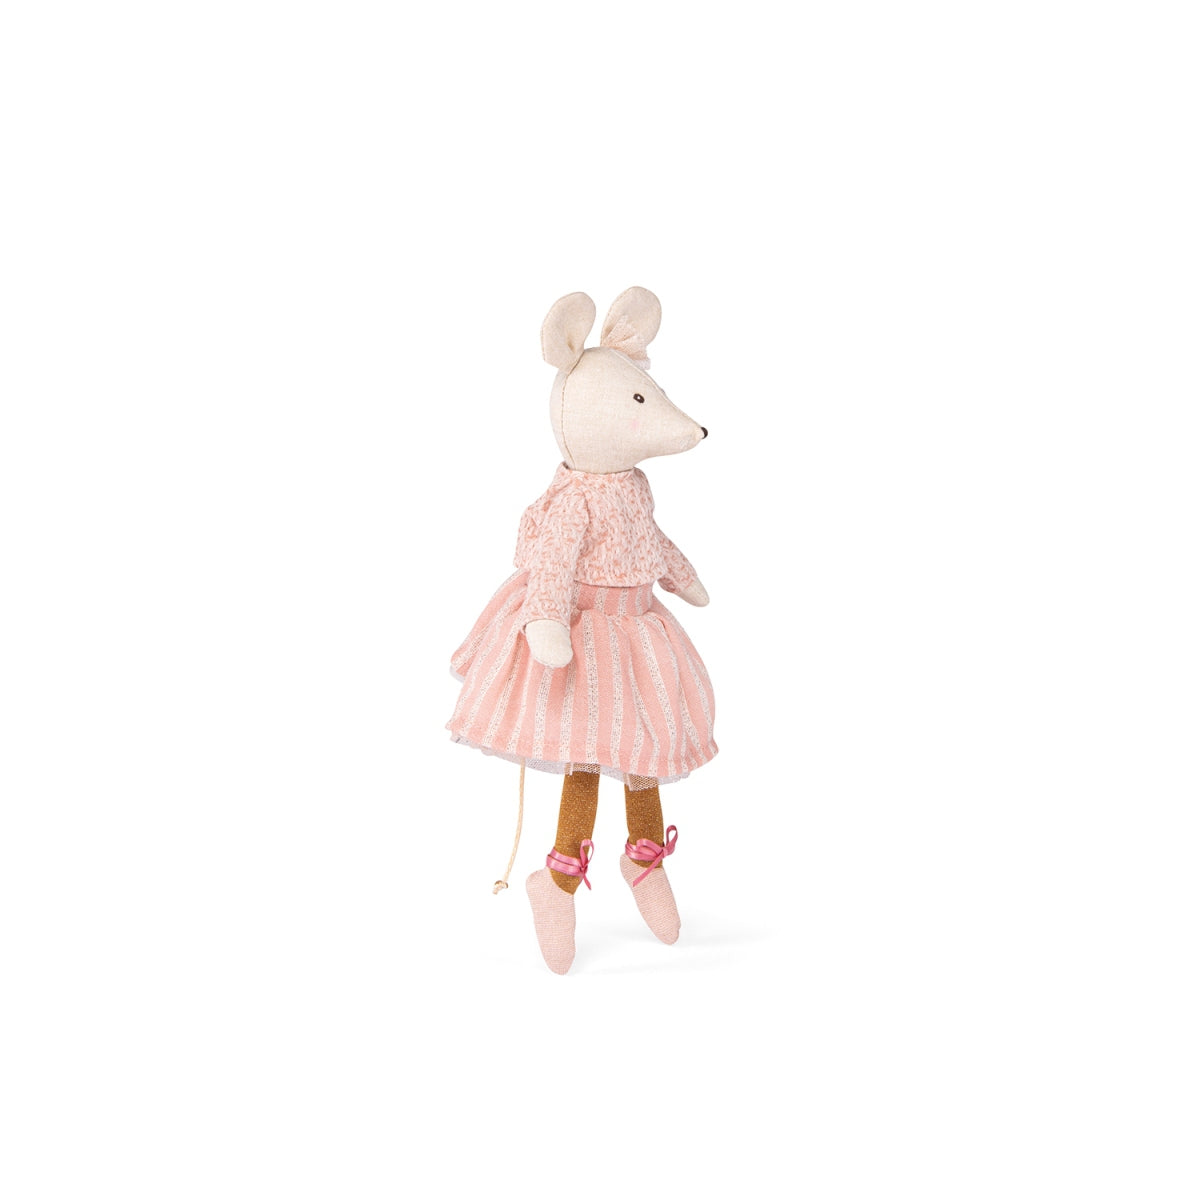 Spielpuppe Maus Anna  von Moulin Roty Süße kleine MOULIN ROTY Ballerina Maus in schickem Glitzer Outfit. Die kleine Maus ist ein süße Geschenk zur Geburt.  